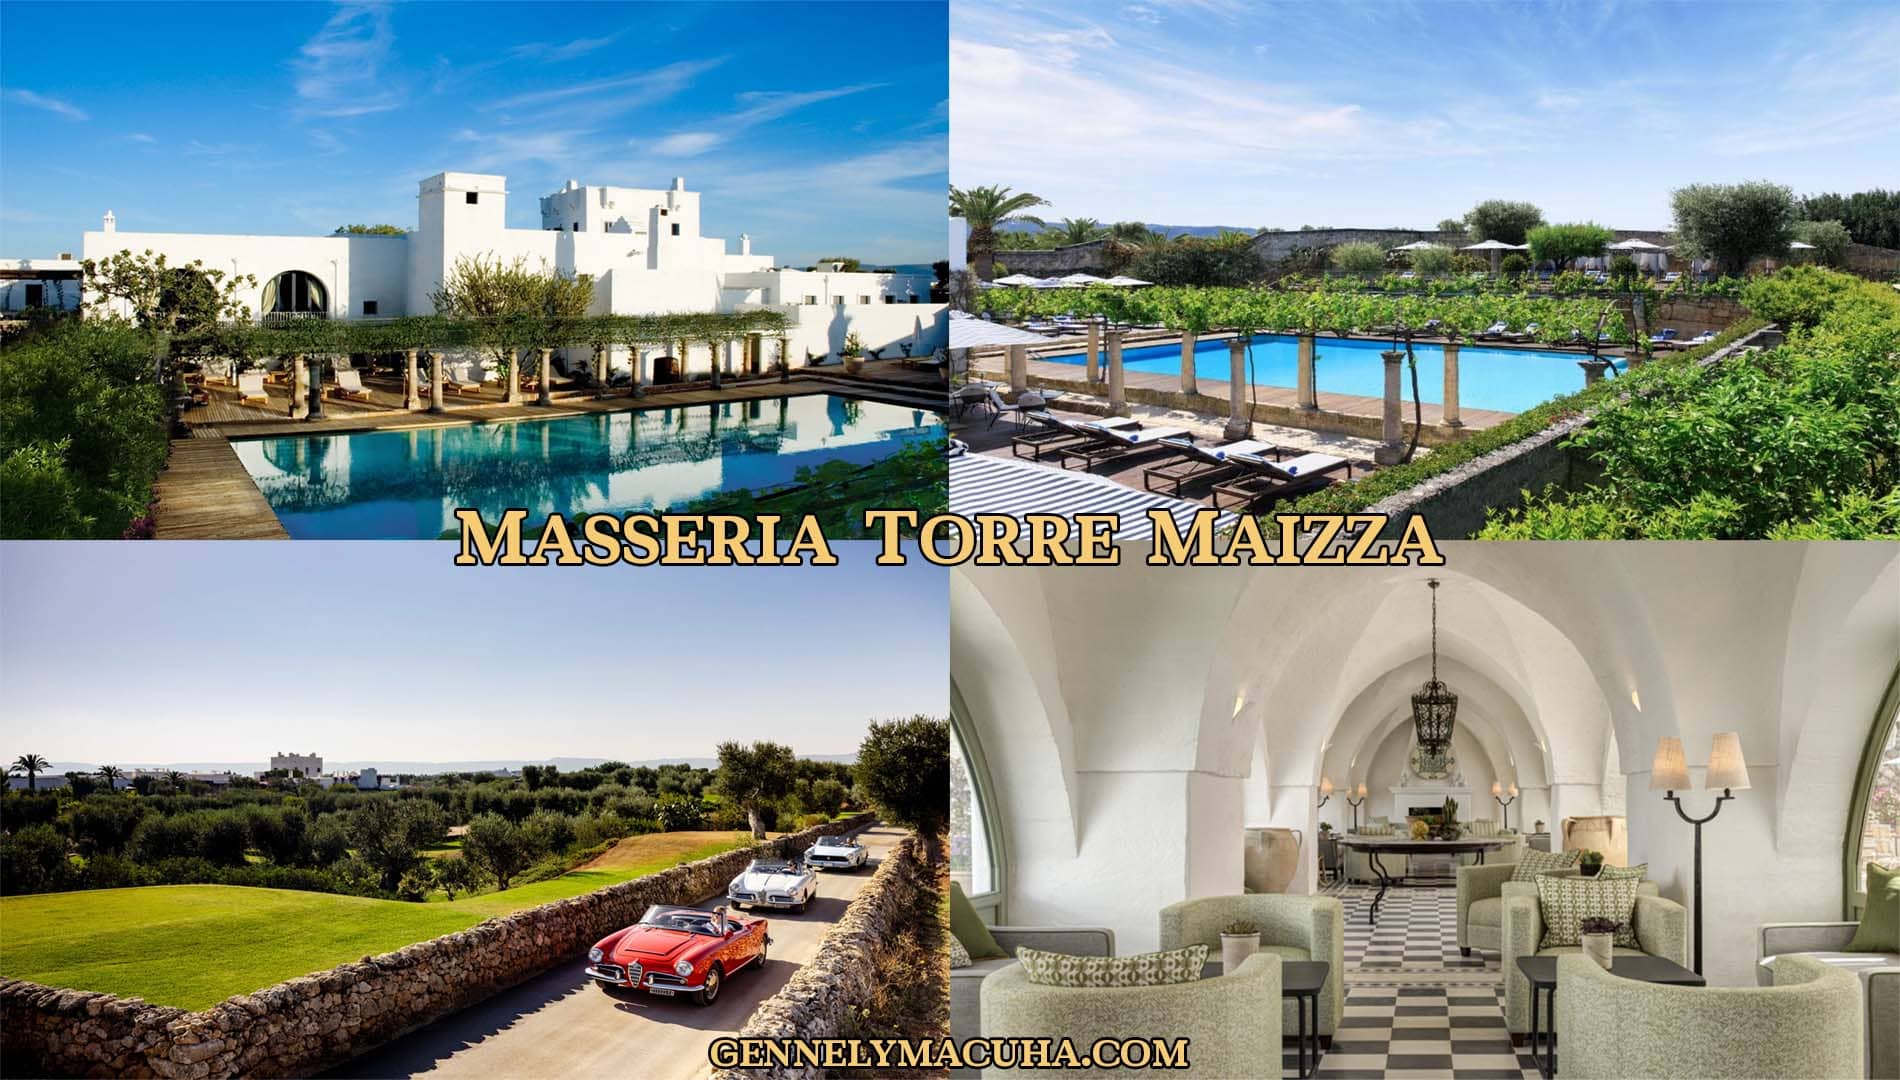 Masseria Torre Maizza: A Jewel in Puglia, Italy